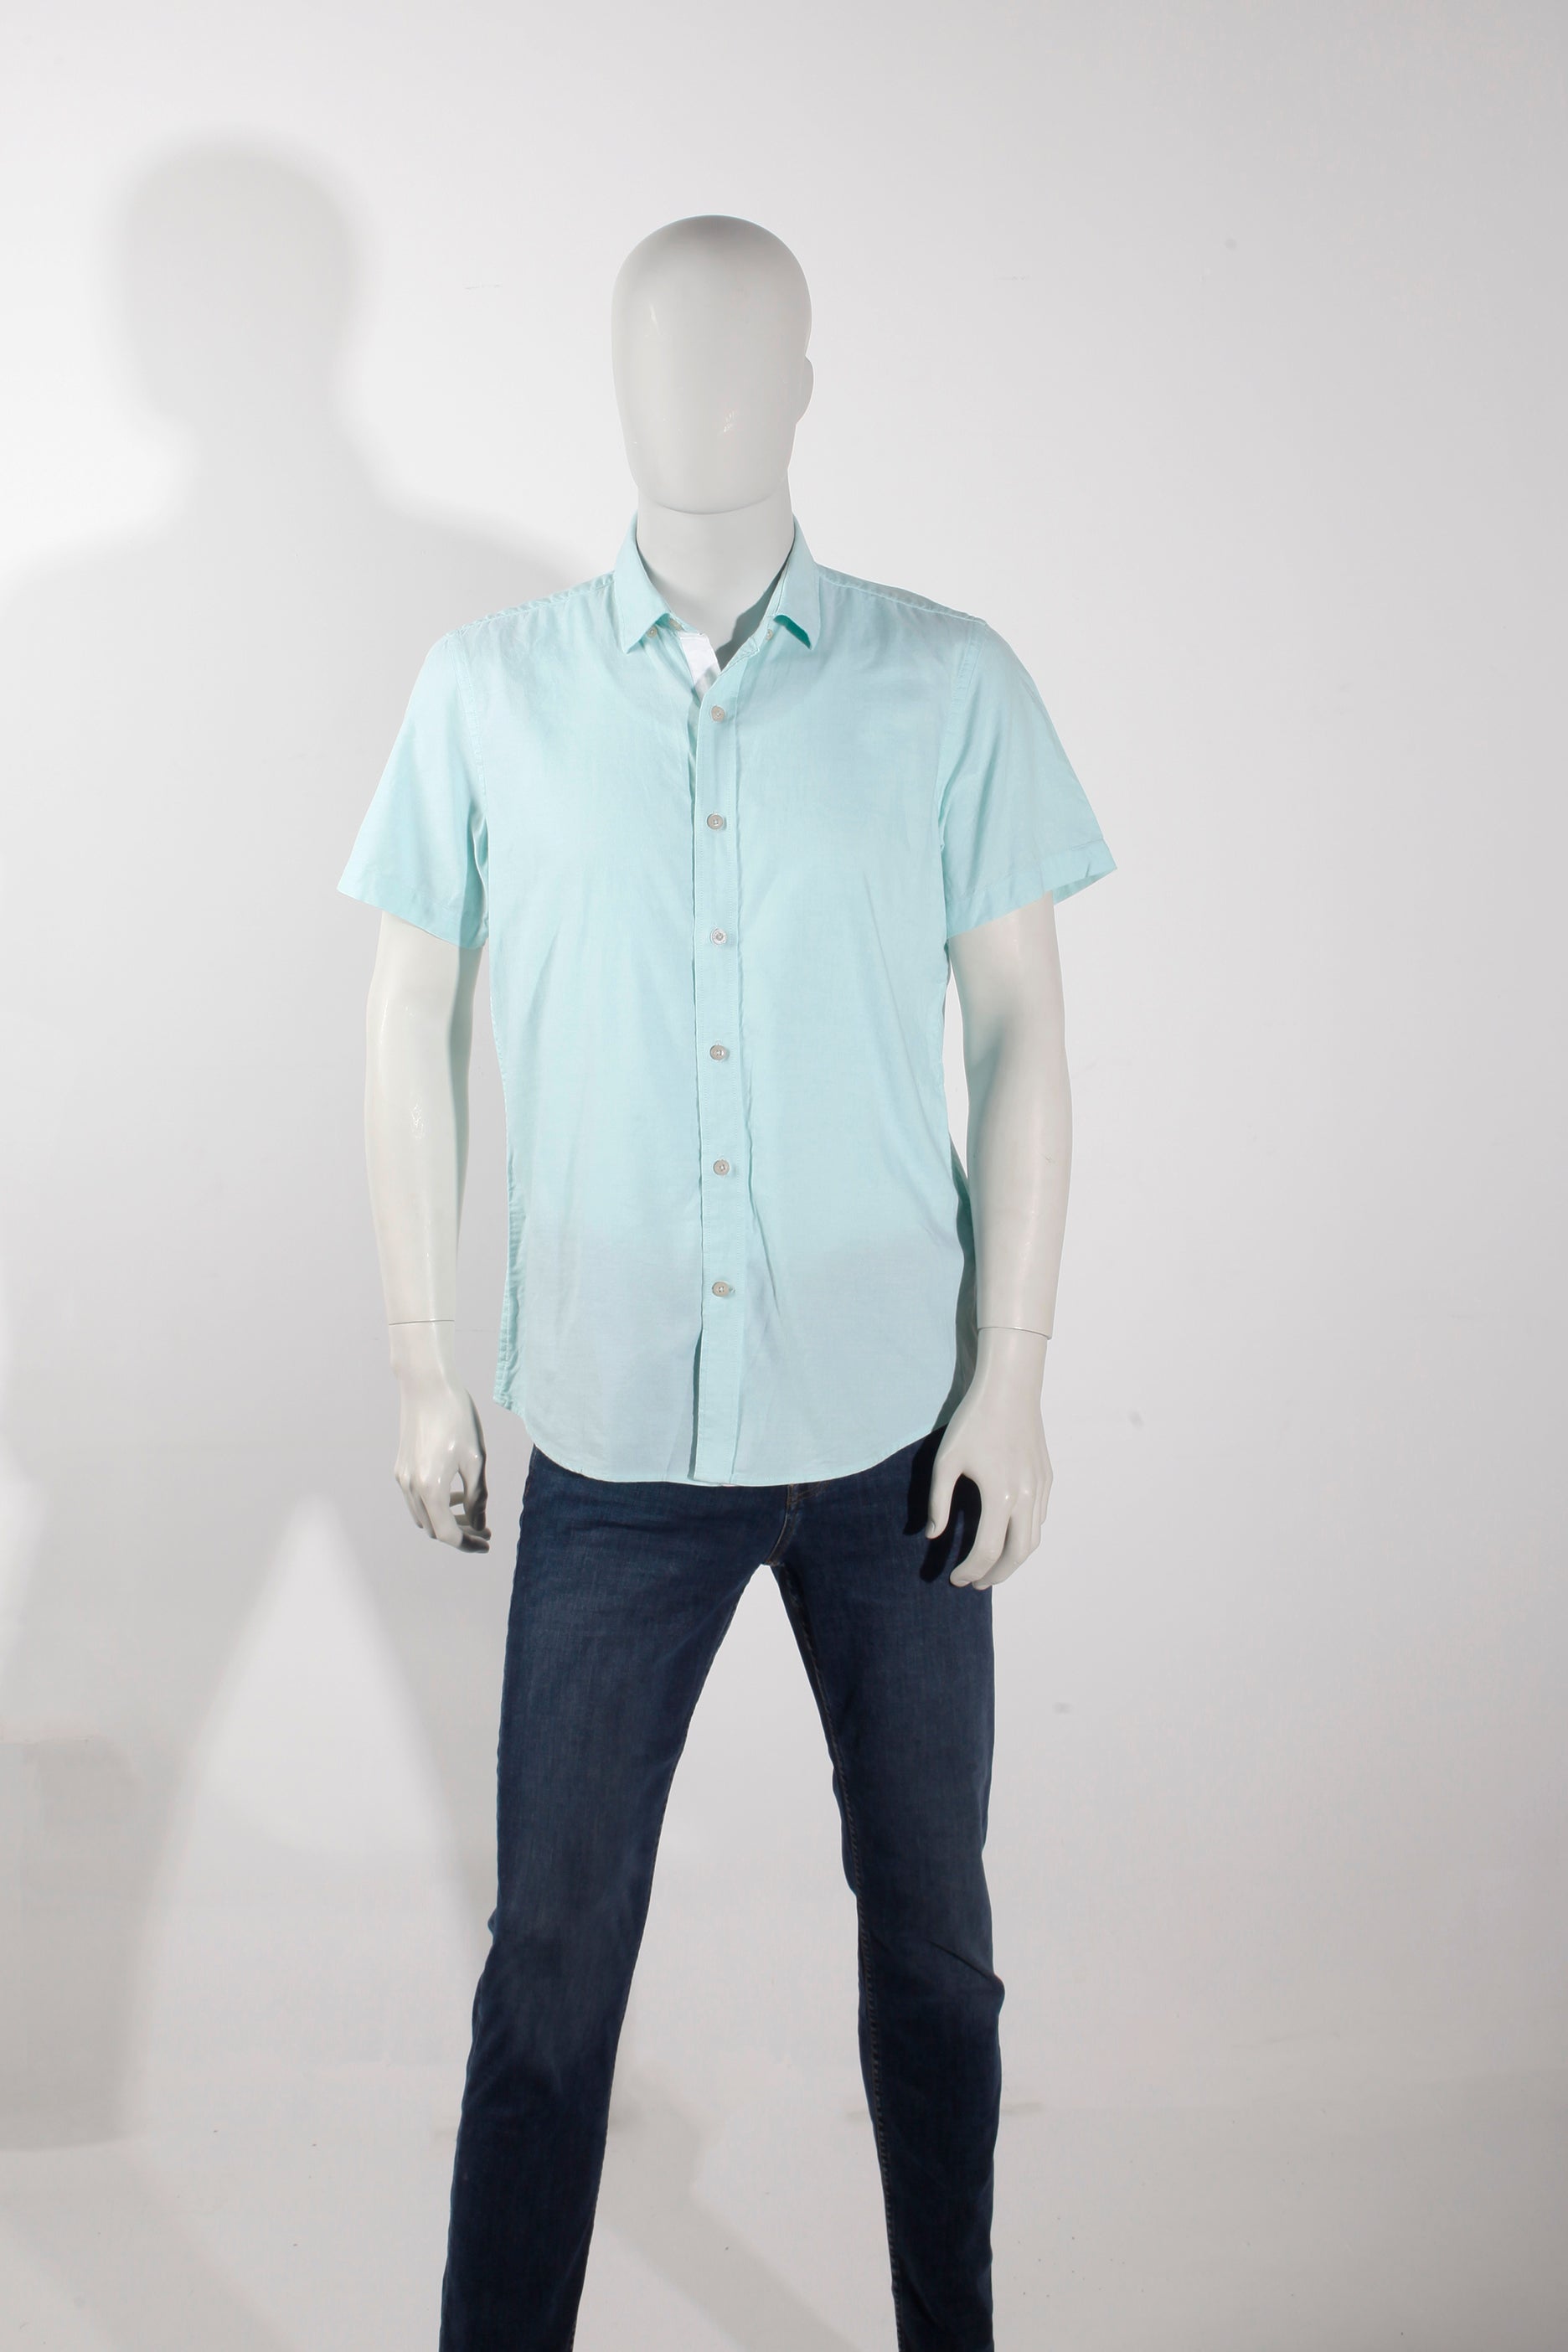 Men's Light Blue Short-Sleeved Shirt (Medium)